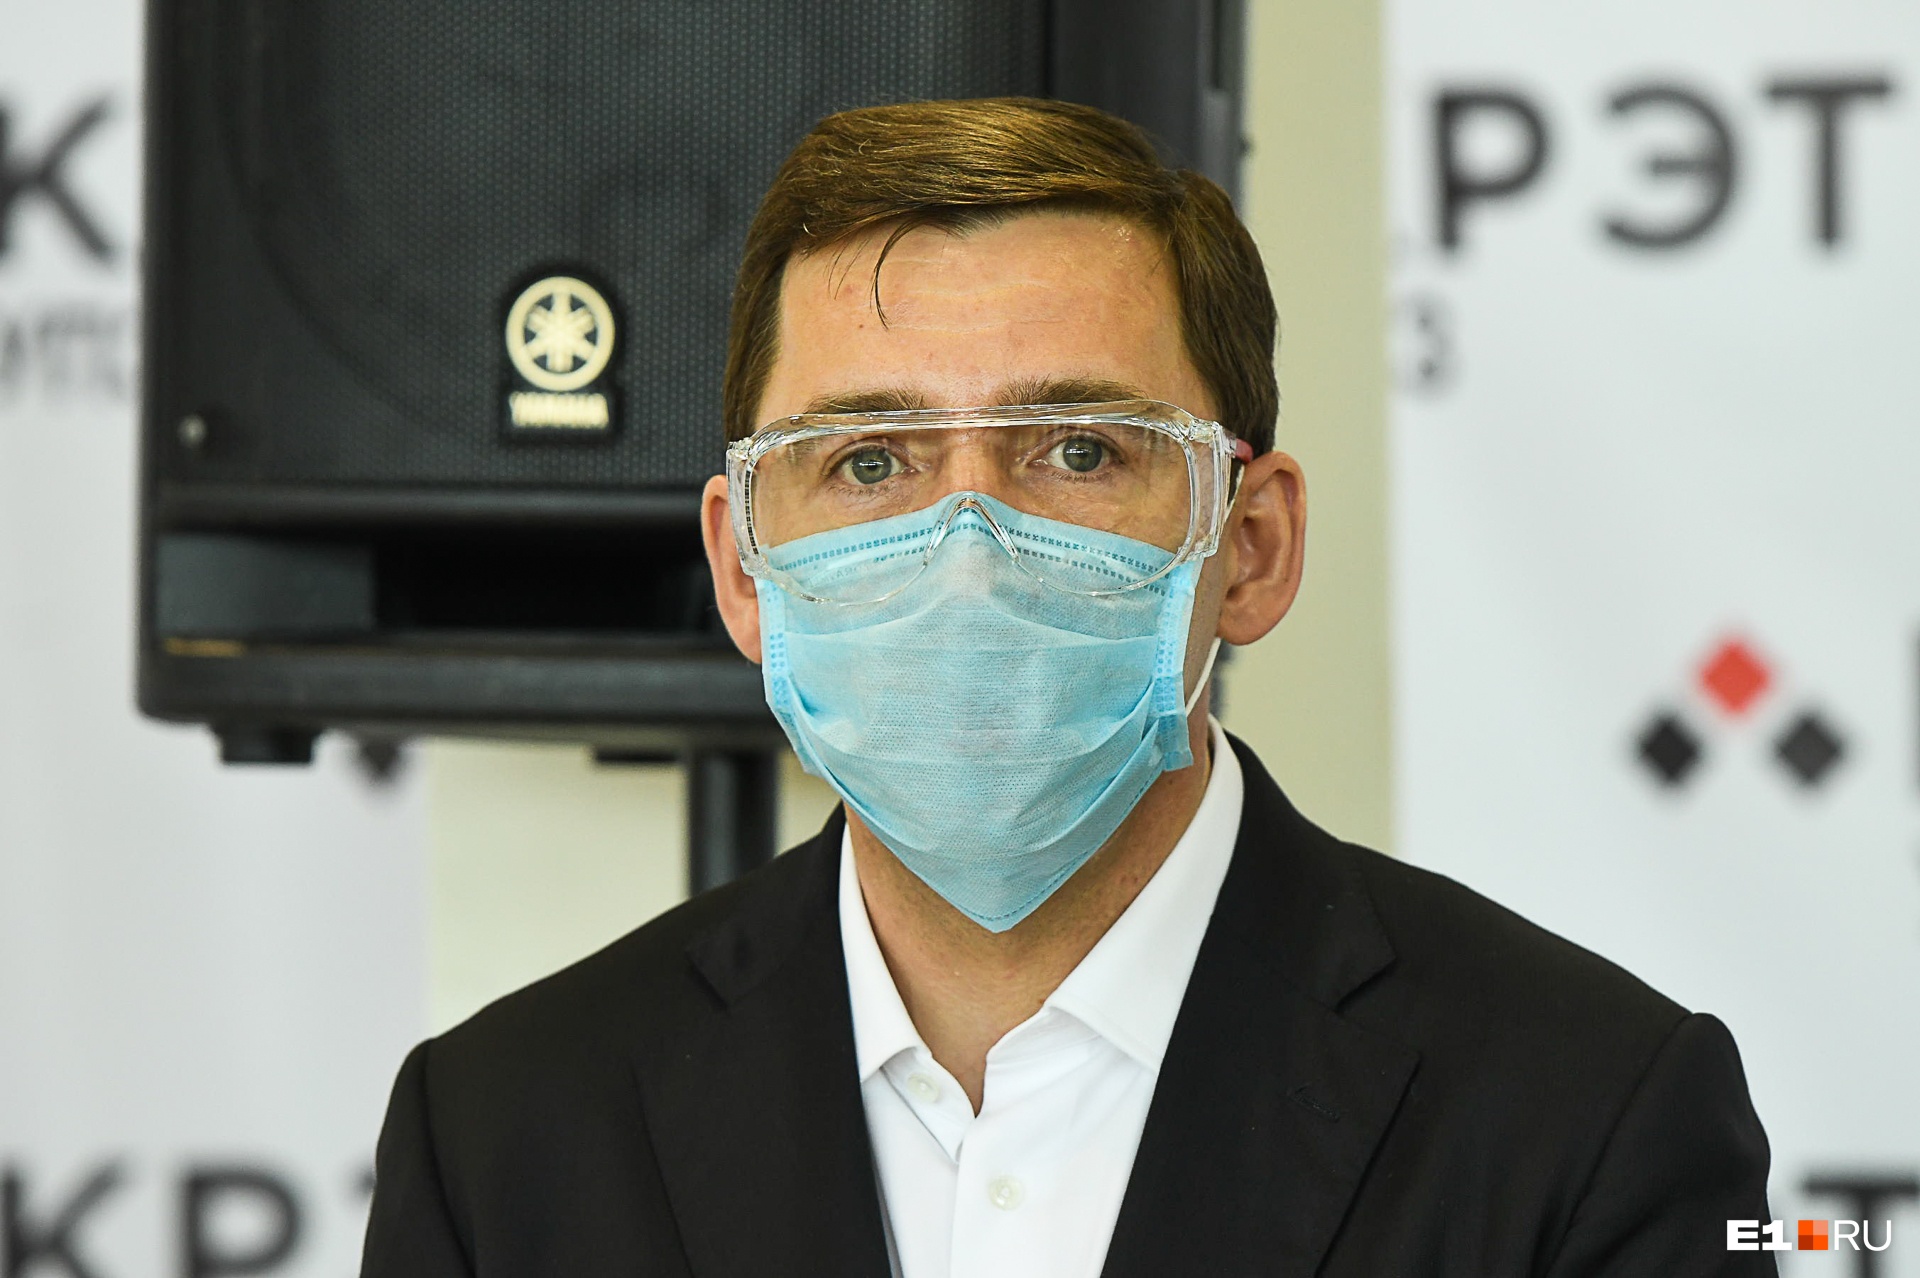 Куйвашев заявил, что власти не запрещали делать КТ в частных клиниках. Мы попробовали записаться